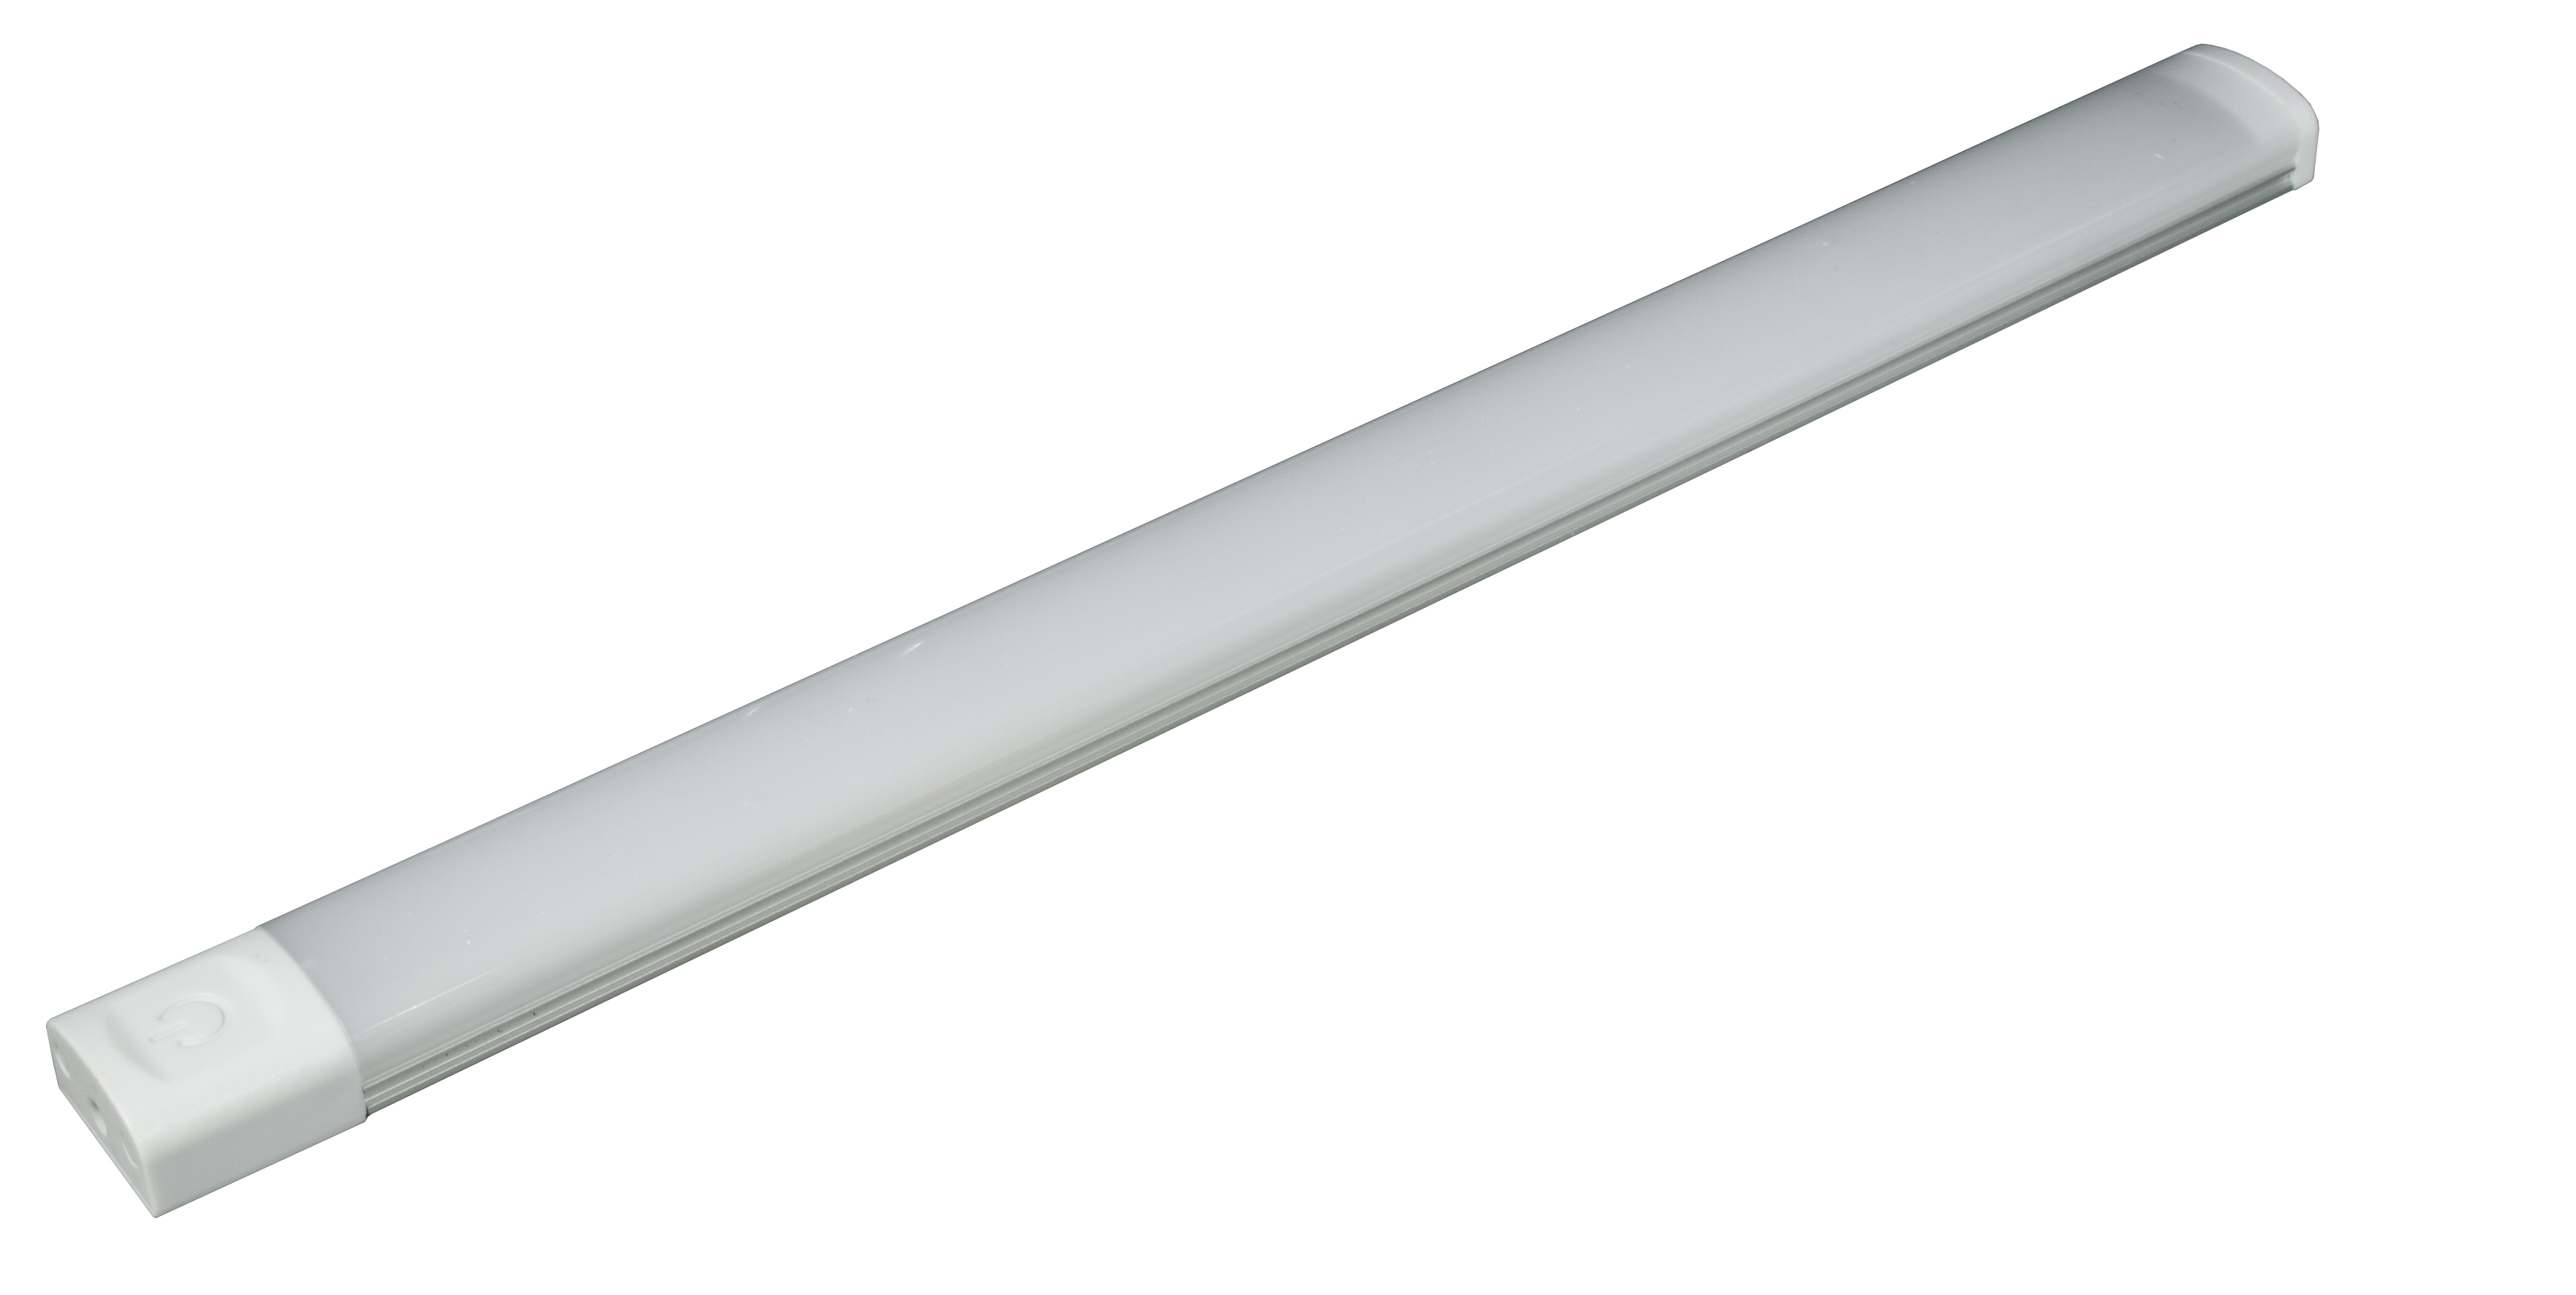 КСС LED Lania 300 |Линейный светодиодный светильник без сенс. 320х25х13,5, блок питания 36Вт, 12V, 6 Вт, 4000К, 1100Лм  — GLS